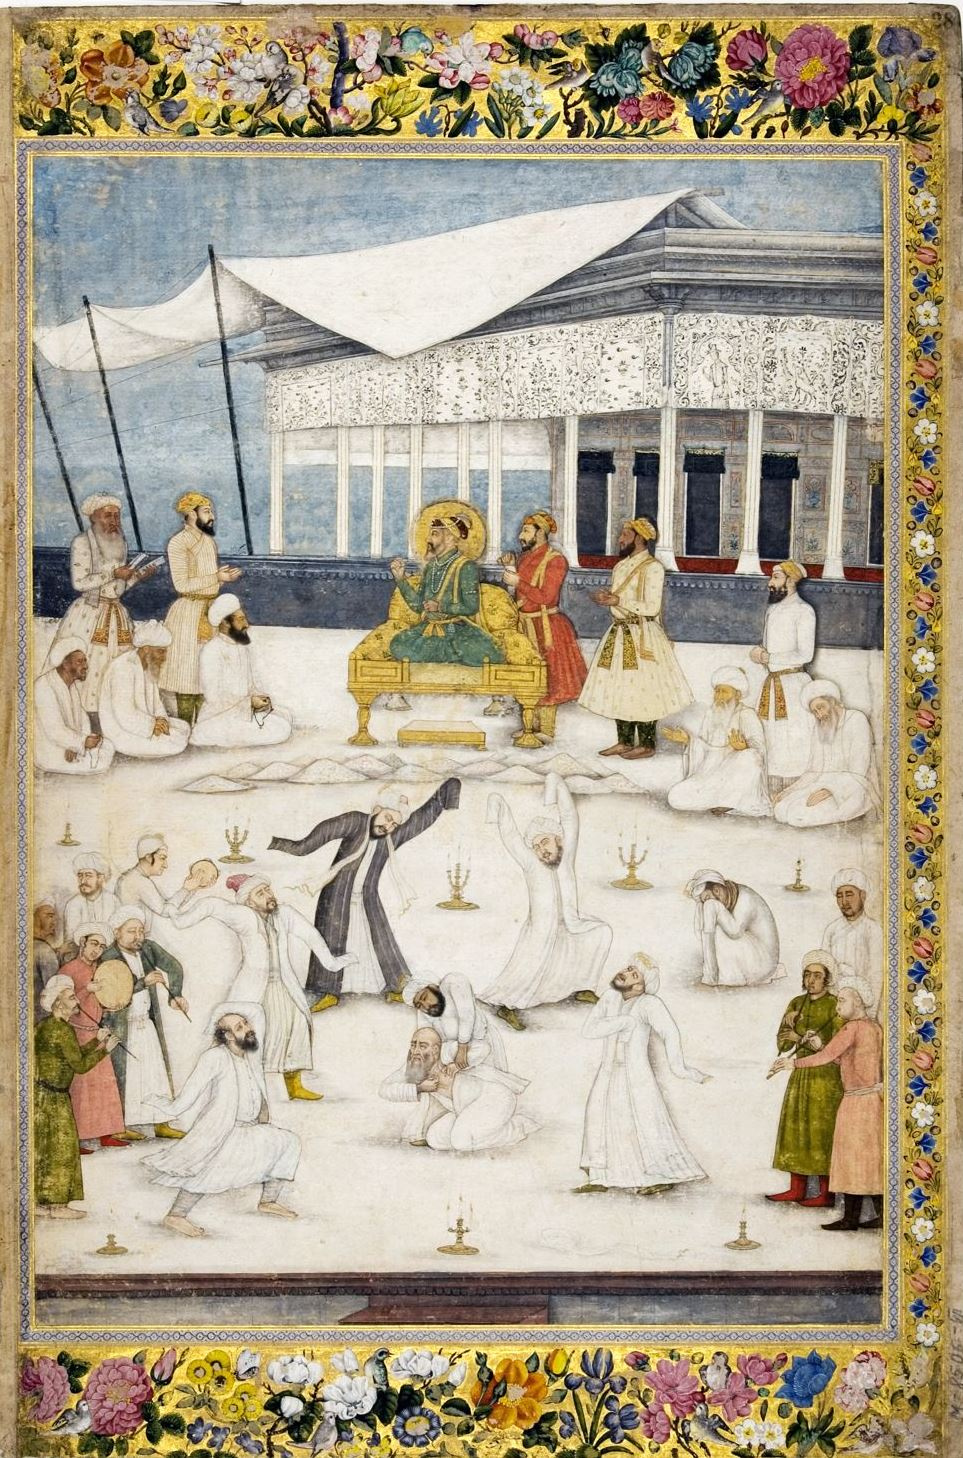 Музей истории религии погрузит в мистический суфизм